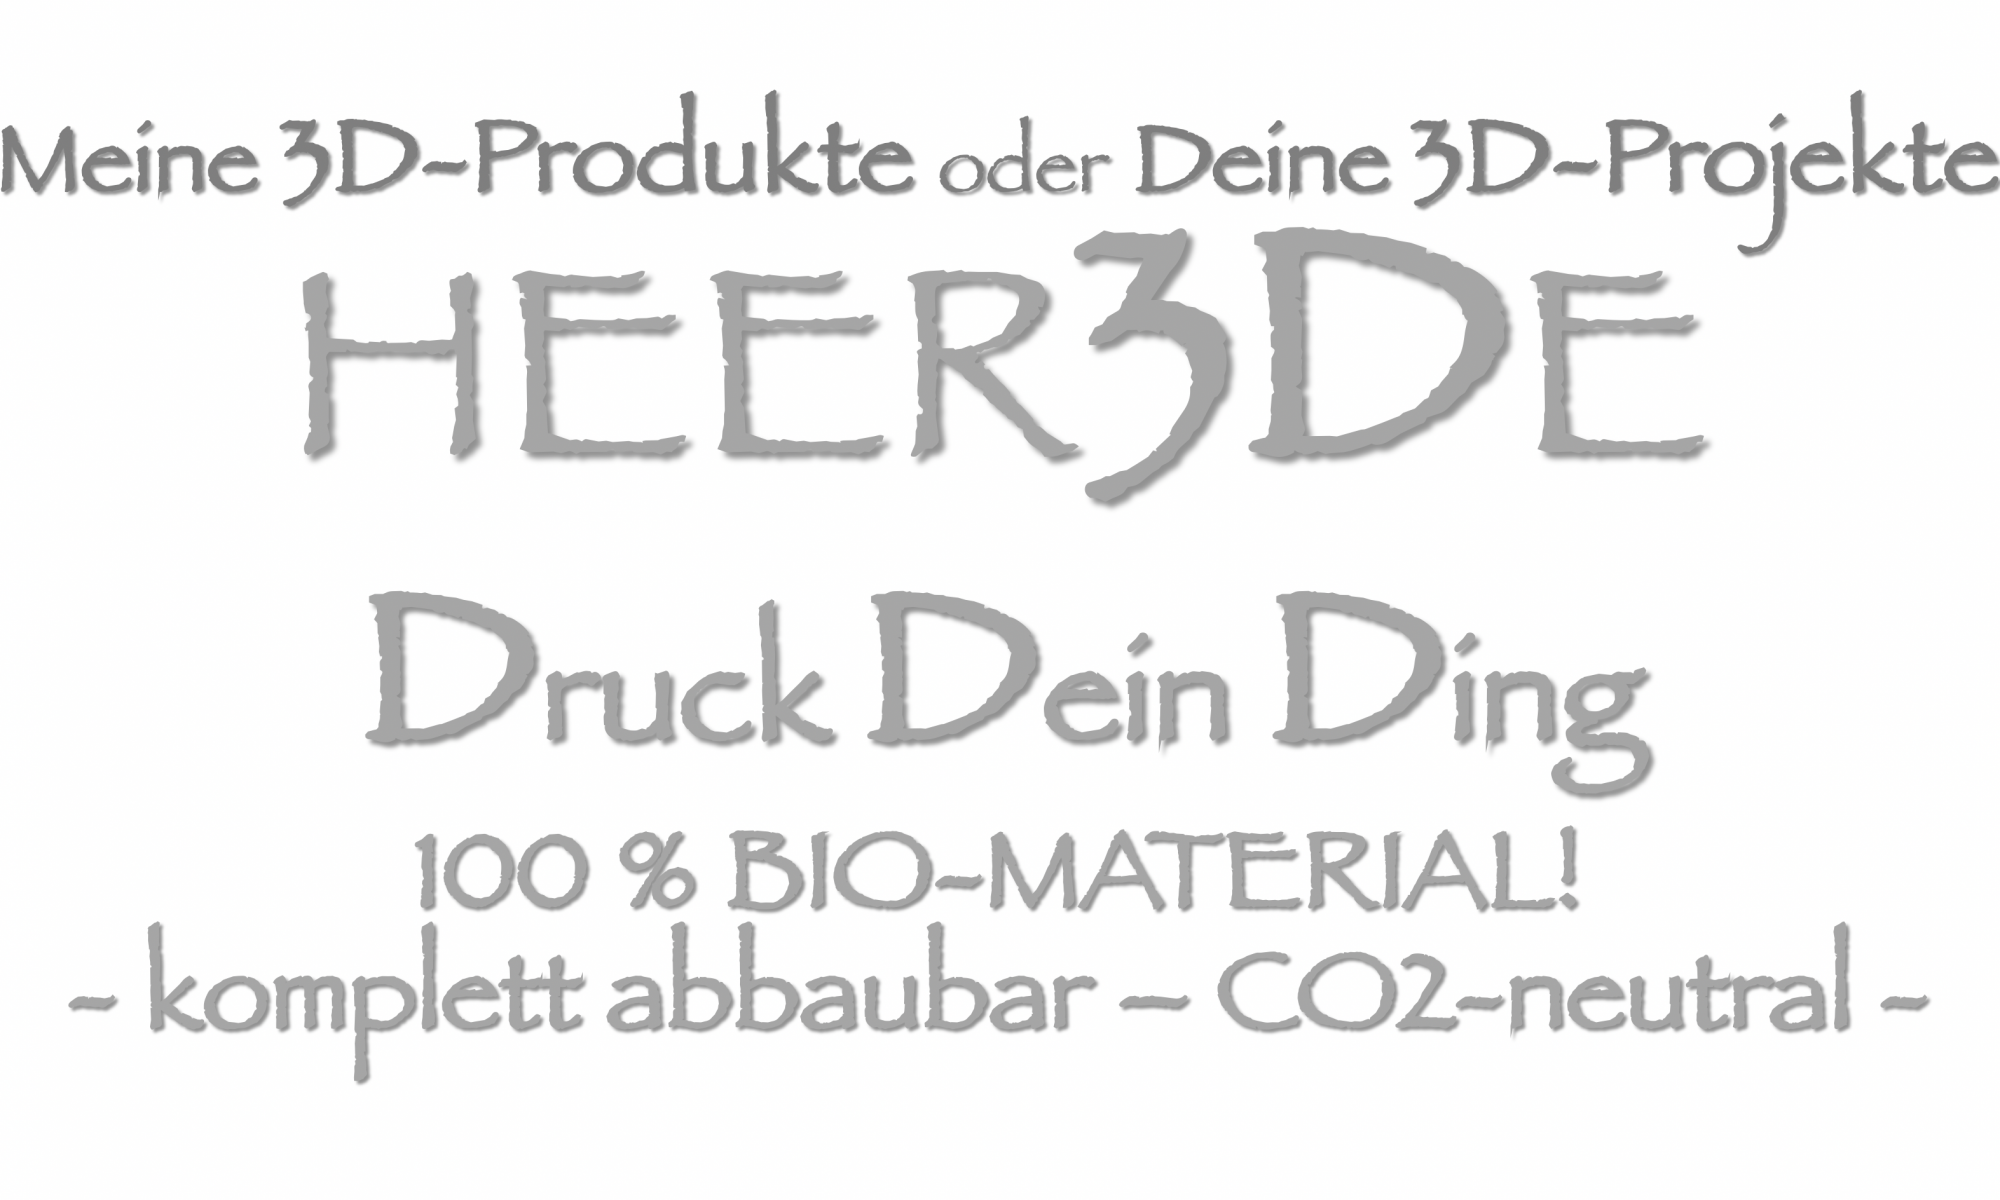 3D-PRODUKTE - 100 % BIO by HEER3DE!